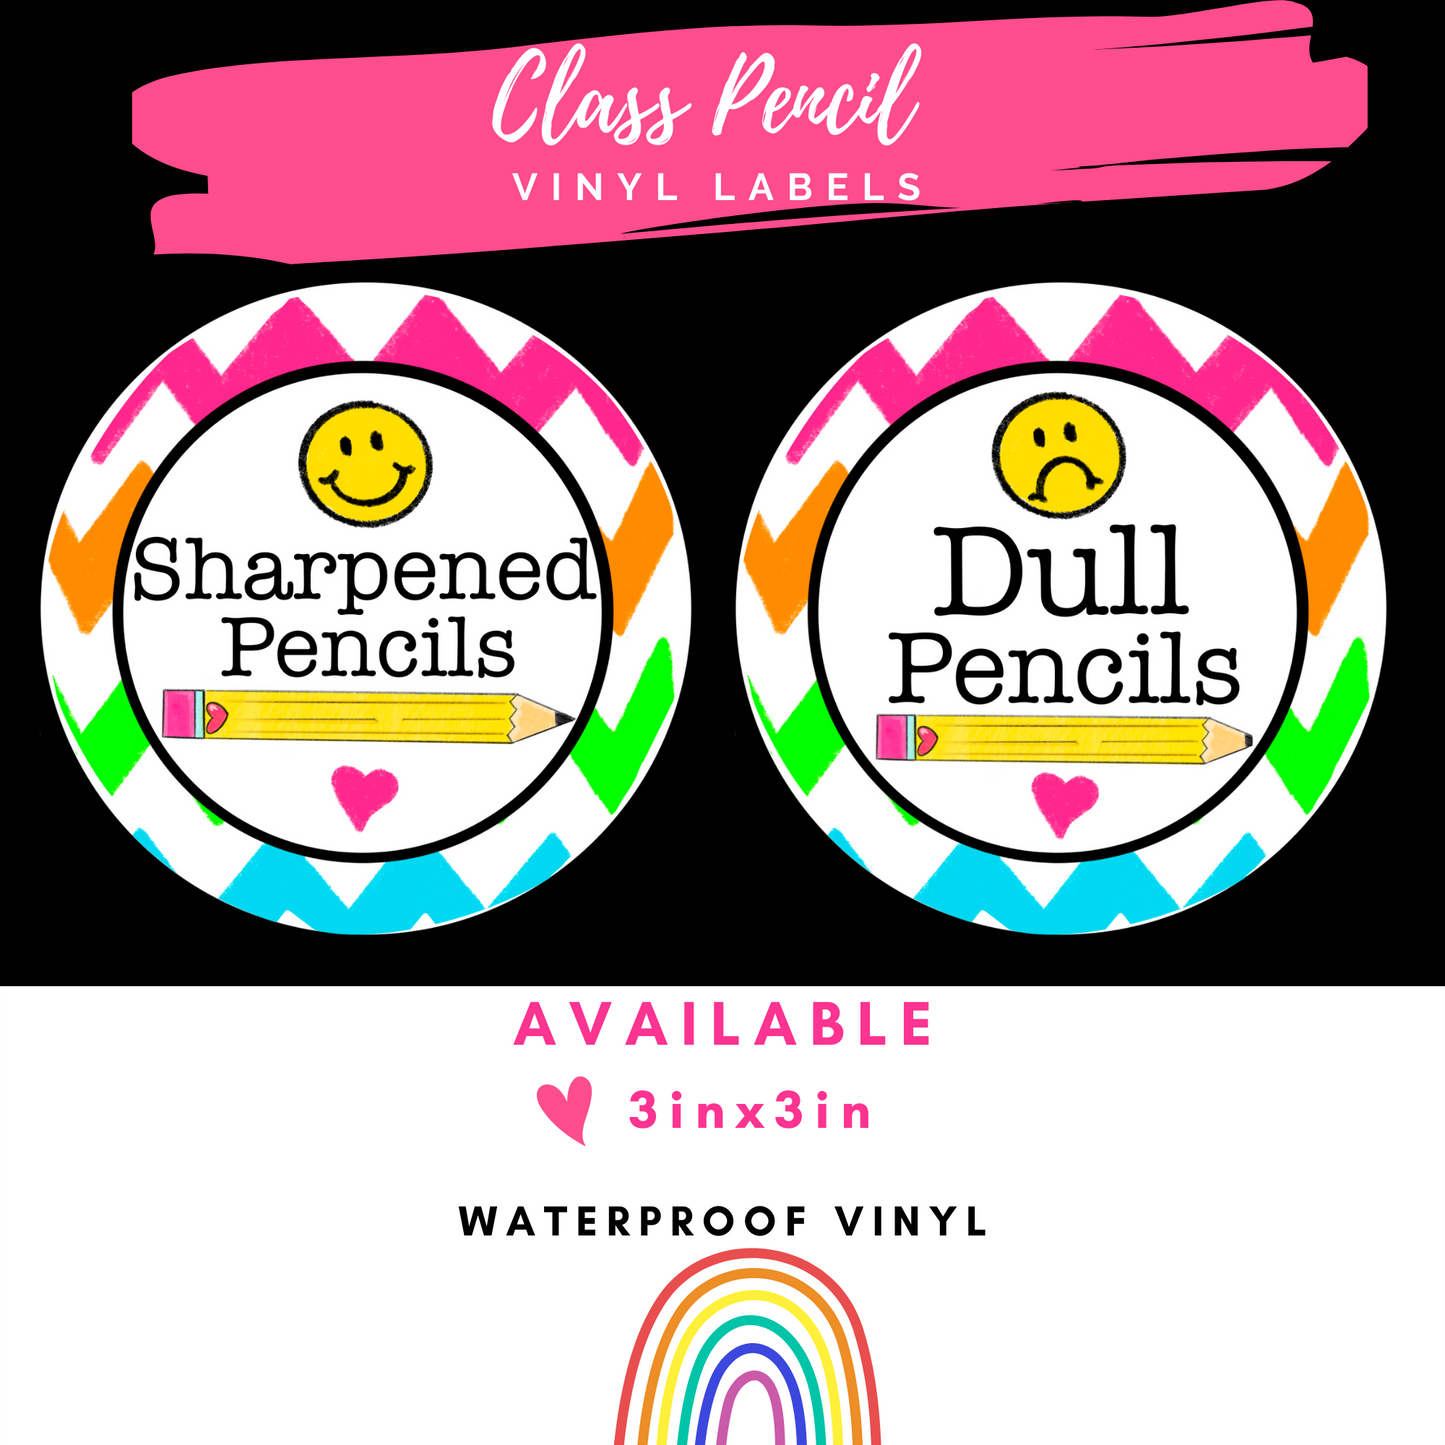 Class Pencil Vinyl Labels